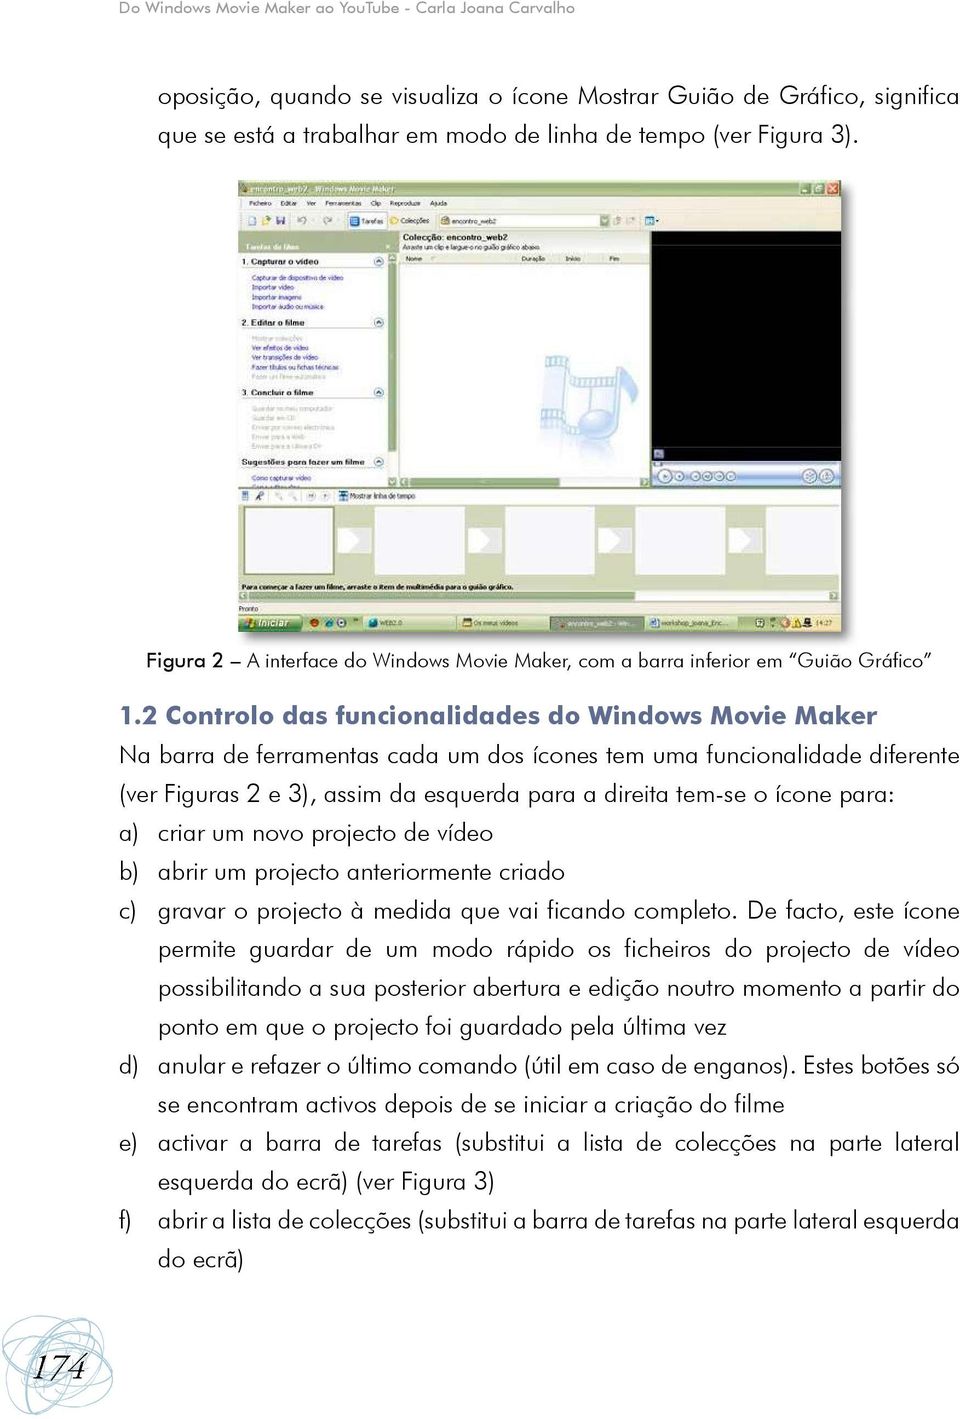 2 Controlo das funcionalidades do Windows Movie Maker Na barra de ferramentas cada um dos ícones tem uma funcionalidade diferente (ver Figuras 2 e 3), assim da esquerda para a direita tem-se o ícone